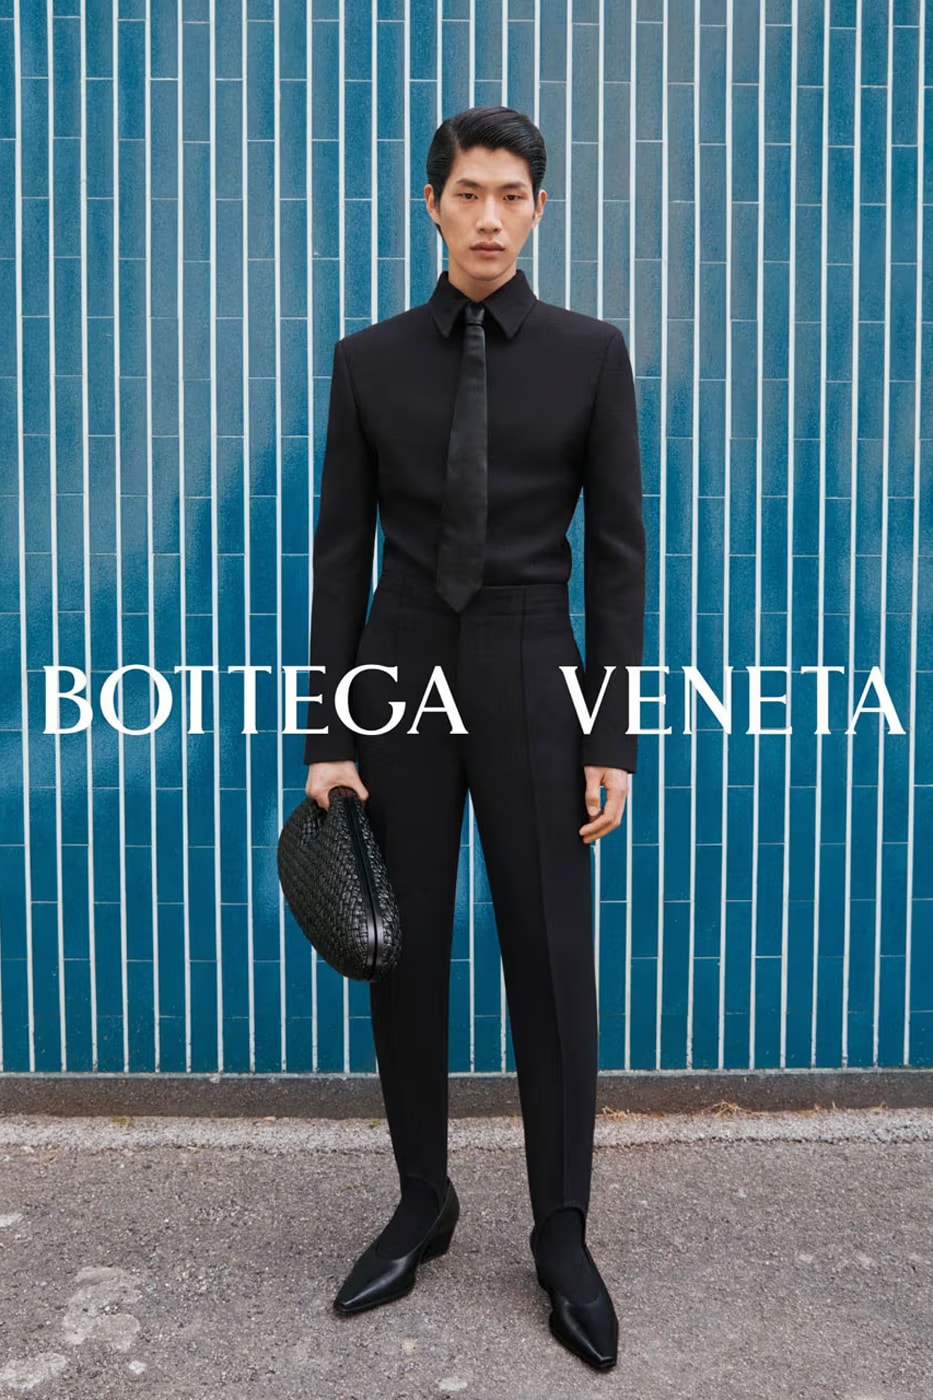 Bottega Veneta F/W 2022 Campaign (Bottega Veneta)